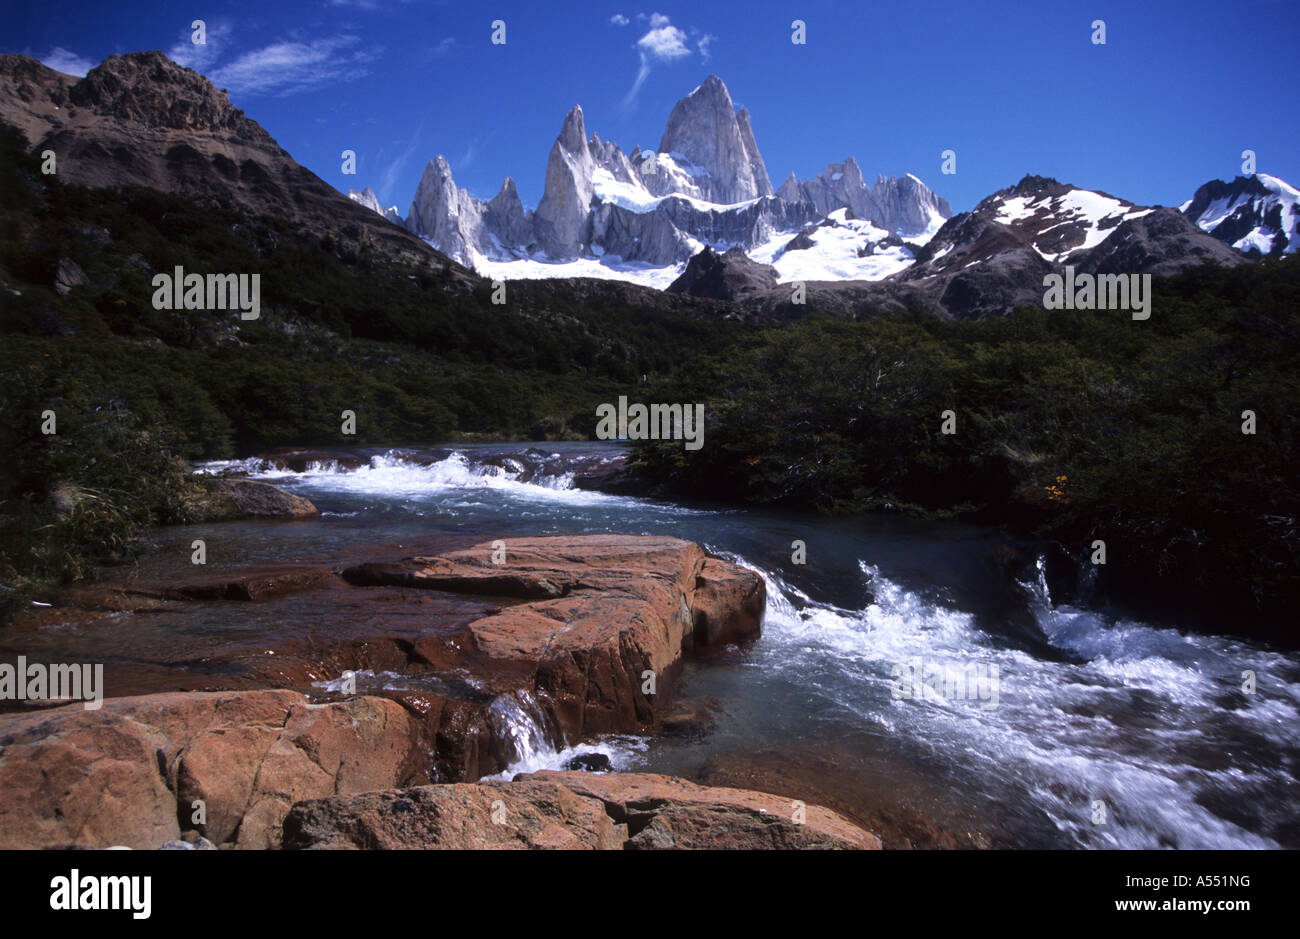 Mt Fitzroy and Chorrillo del Salto, near El Chalten, Los Glaciares National Park, Patagonia, Argentina Stock Photo